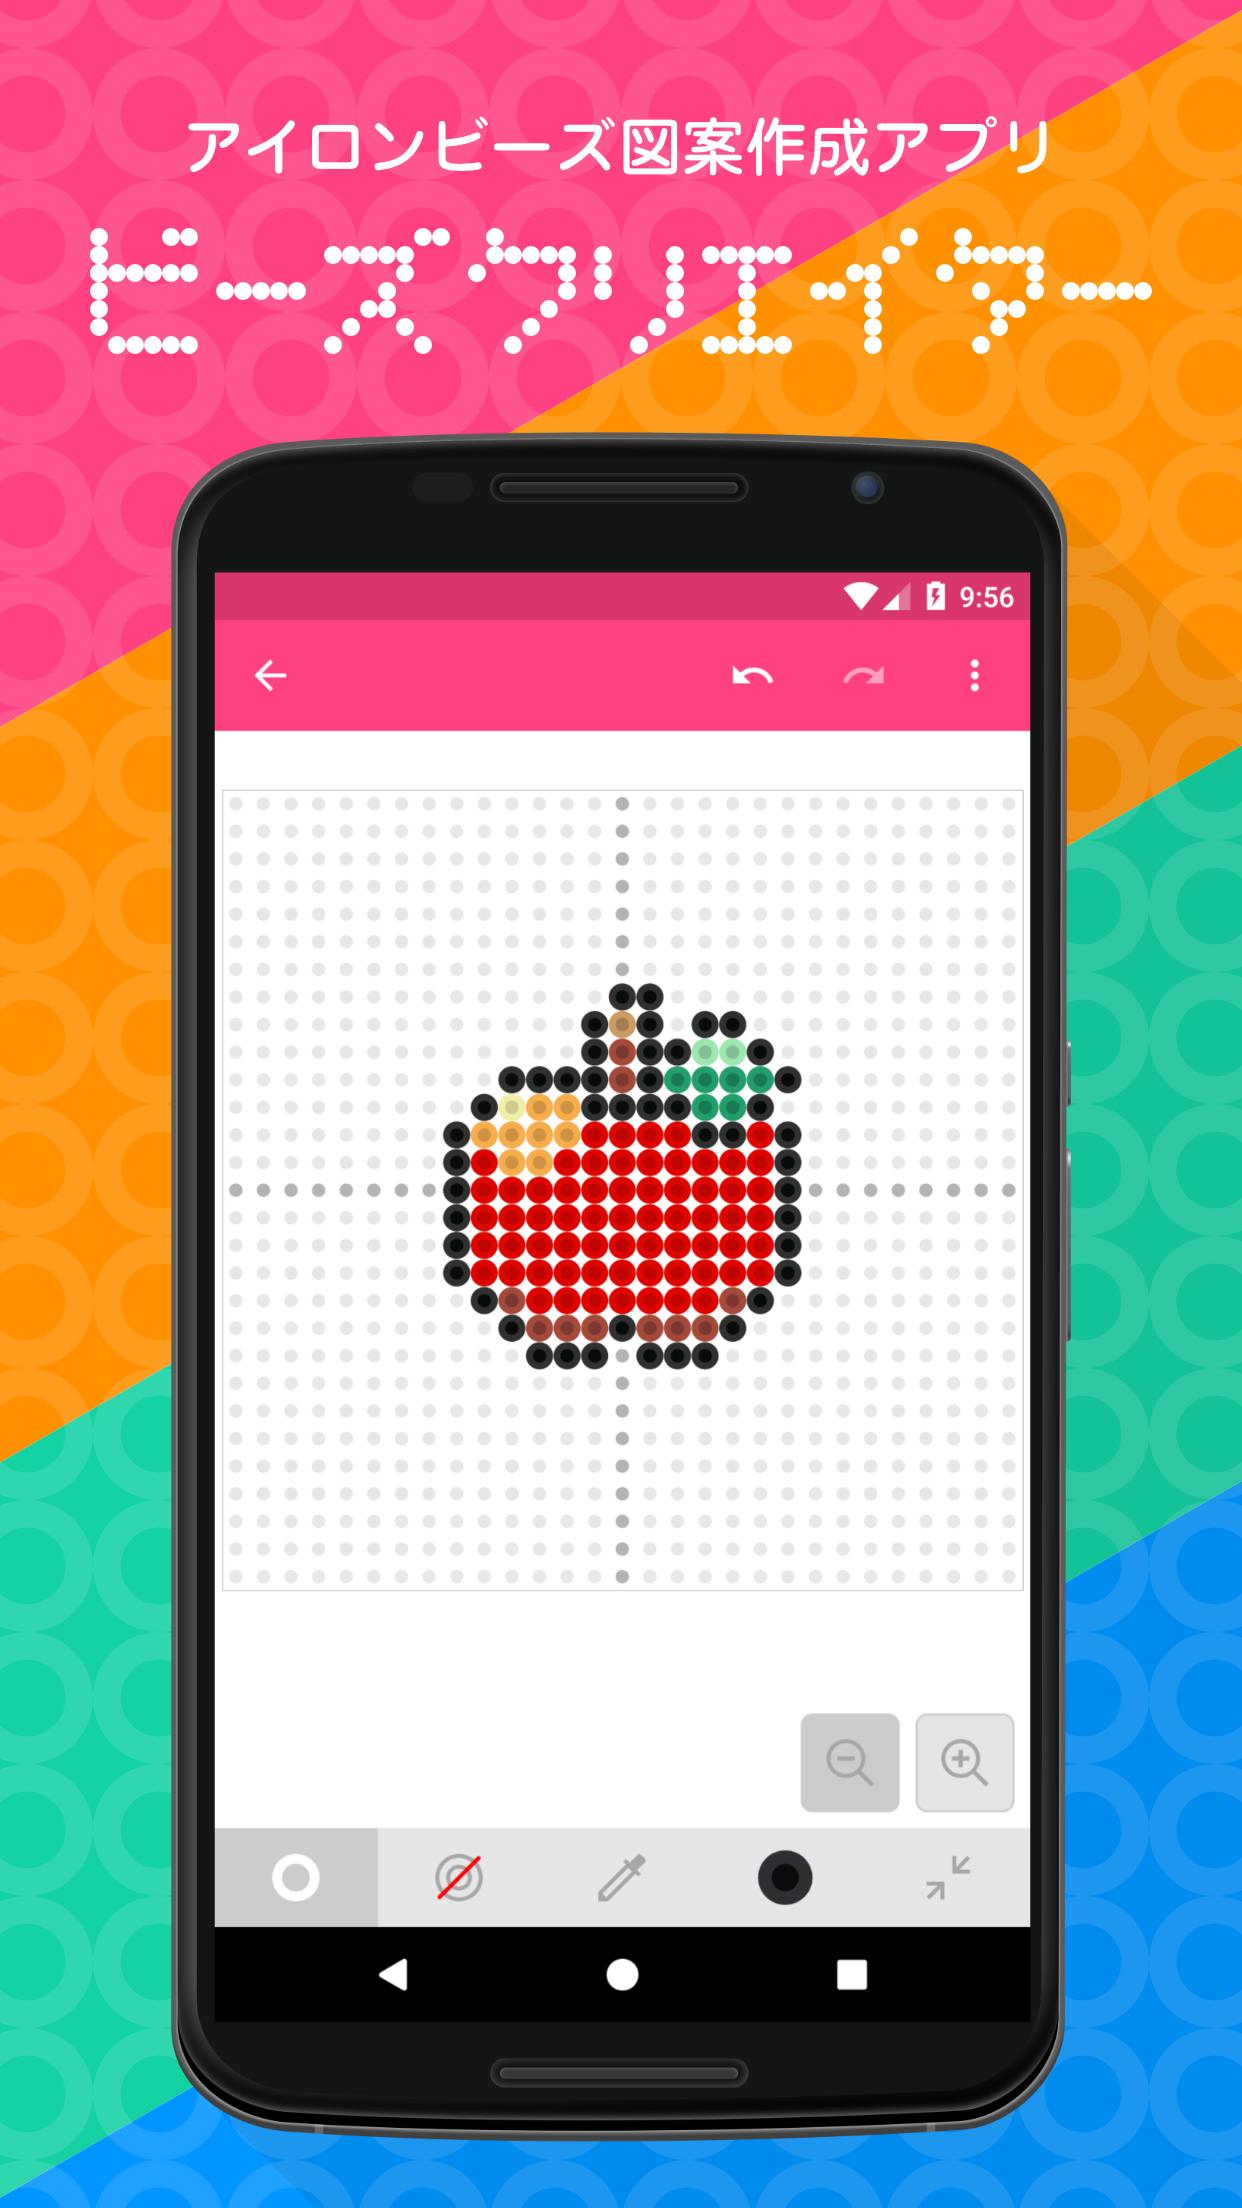 Android 用の ビーズクリエイター アイロンビーズ図案アプリ Apk をダウンロード